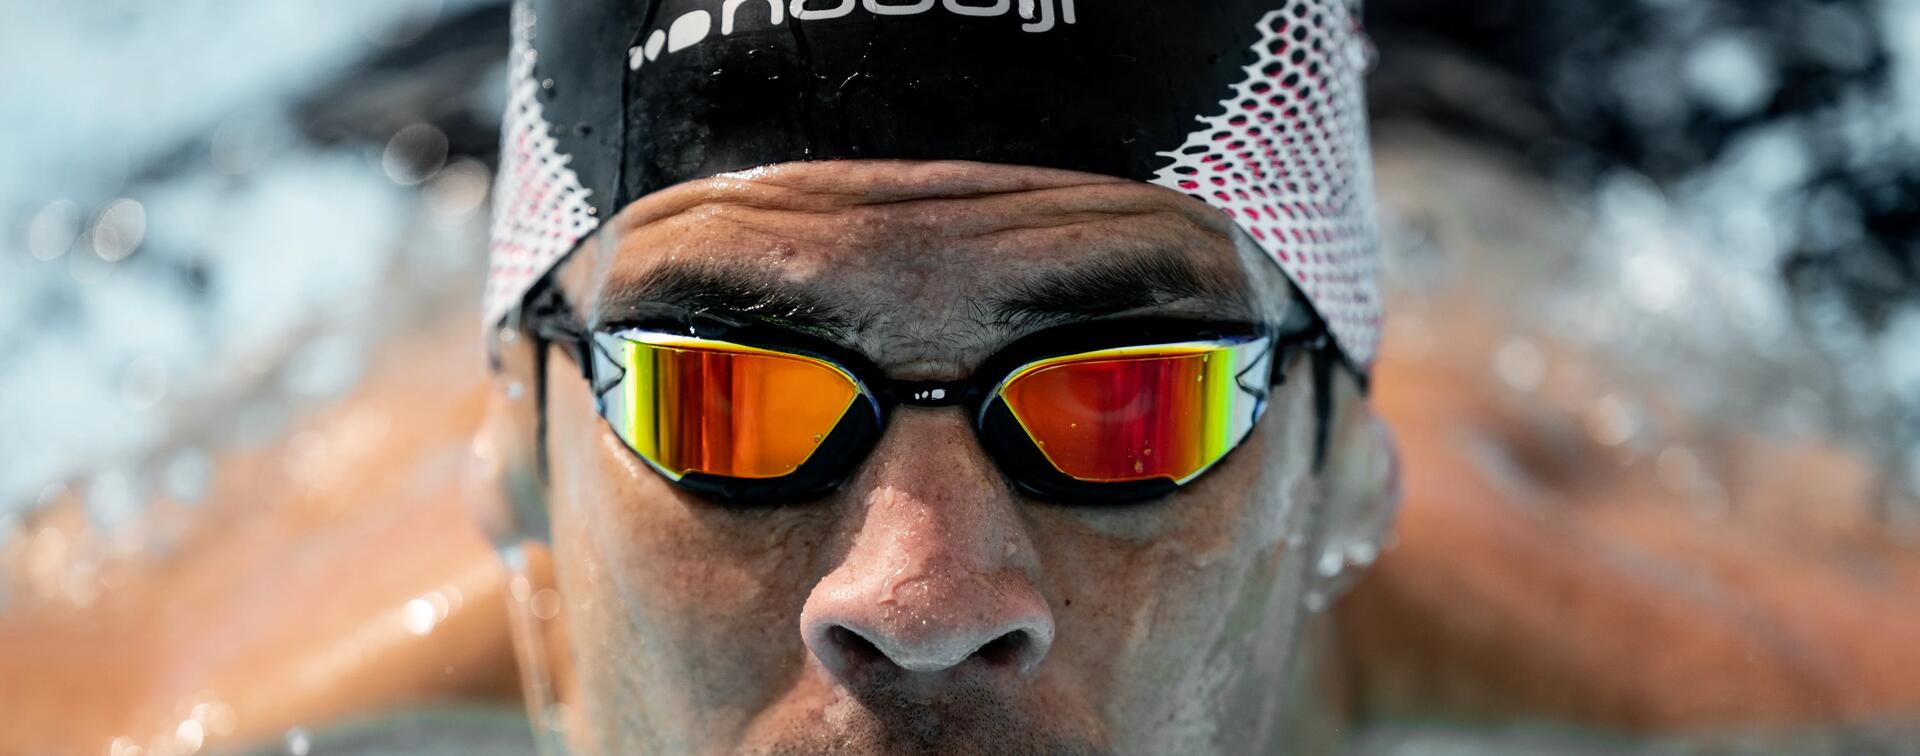 Schwimmbrille B-Fast - Wettkampfbrille für intensive Schwimmer - Schwimmbrille Triathlon